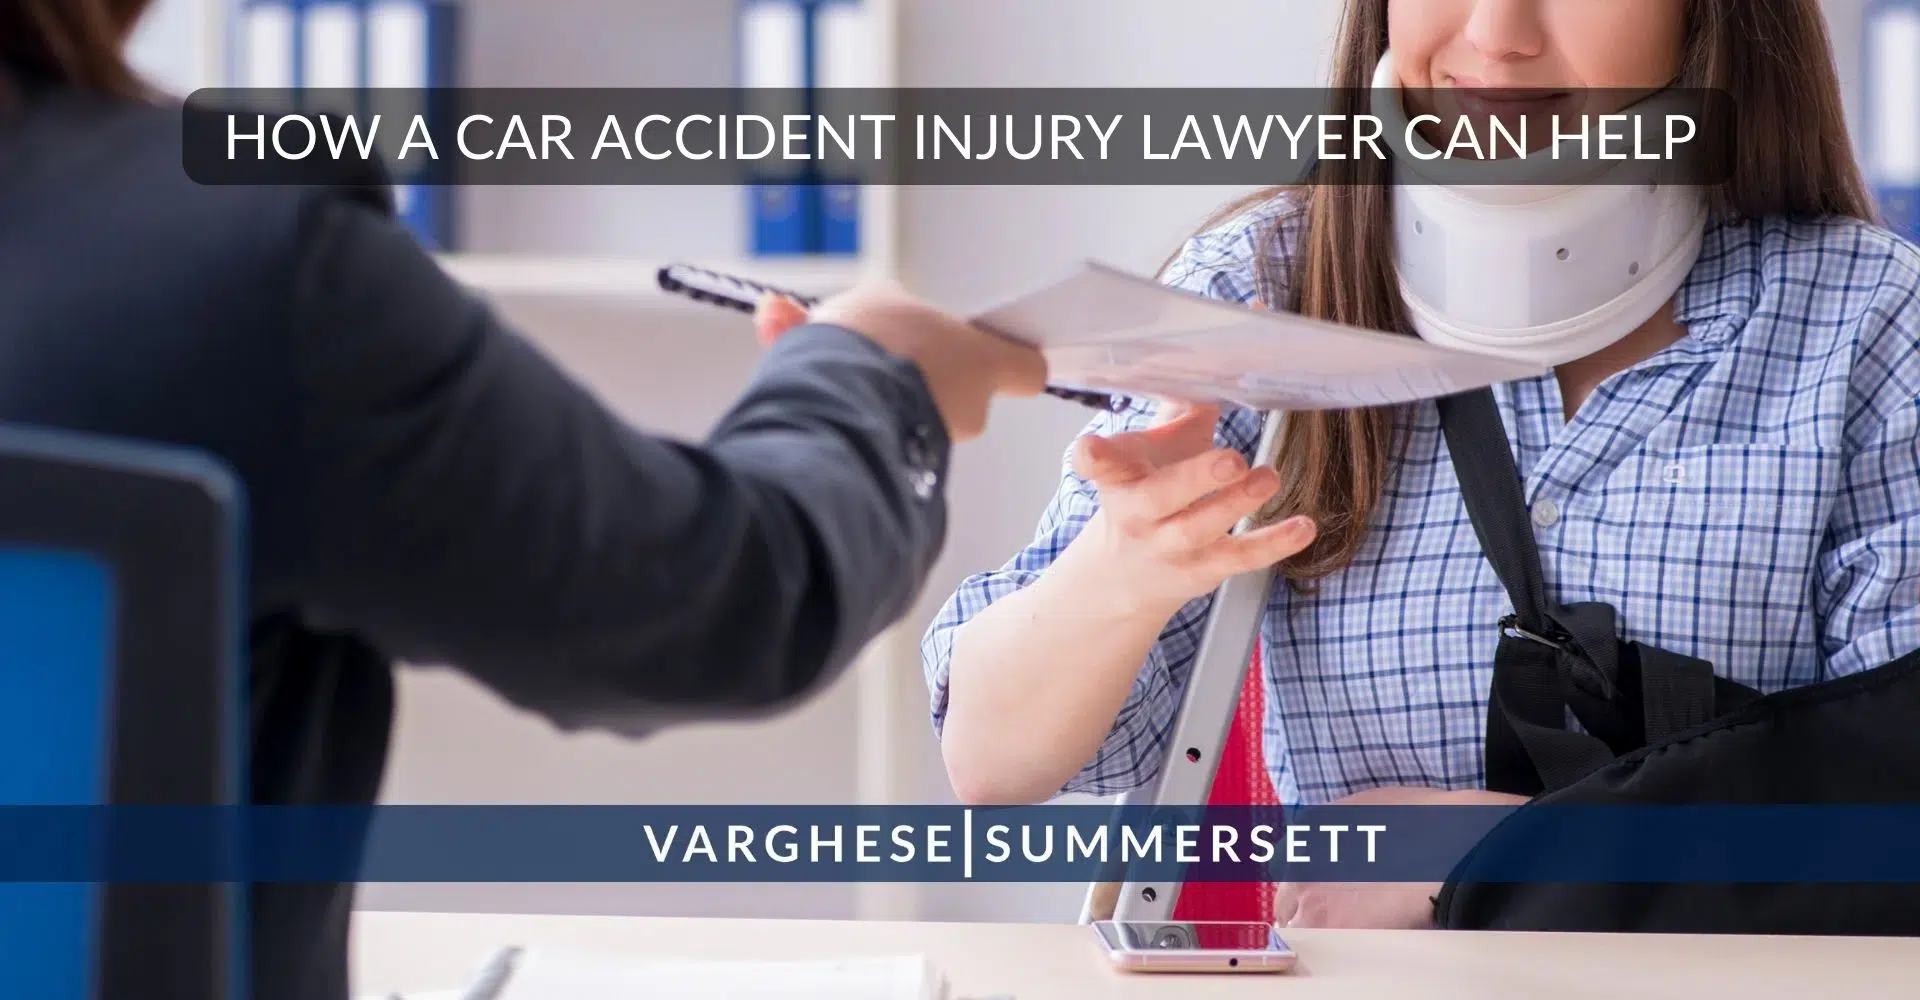 Cómo puede ayudar un abogado especializado en lesiones automovilísticas